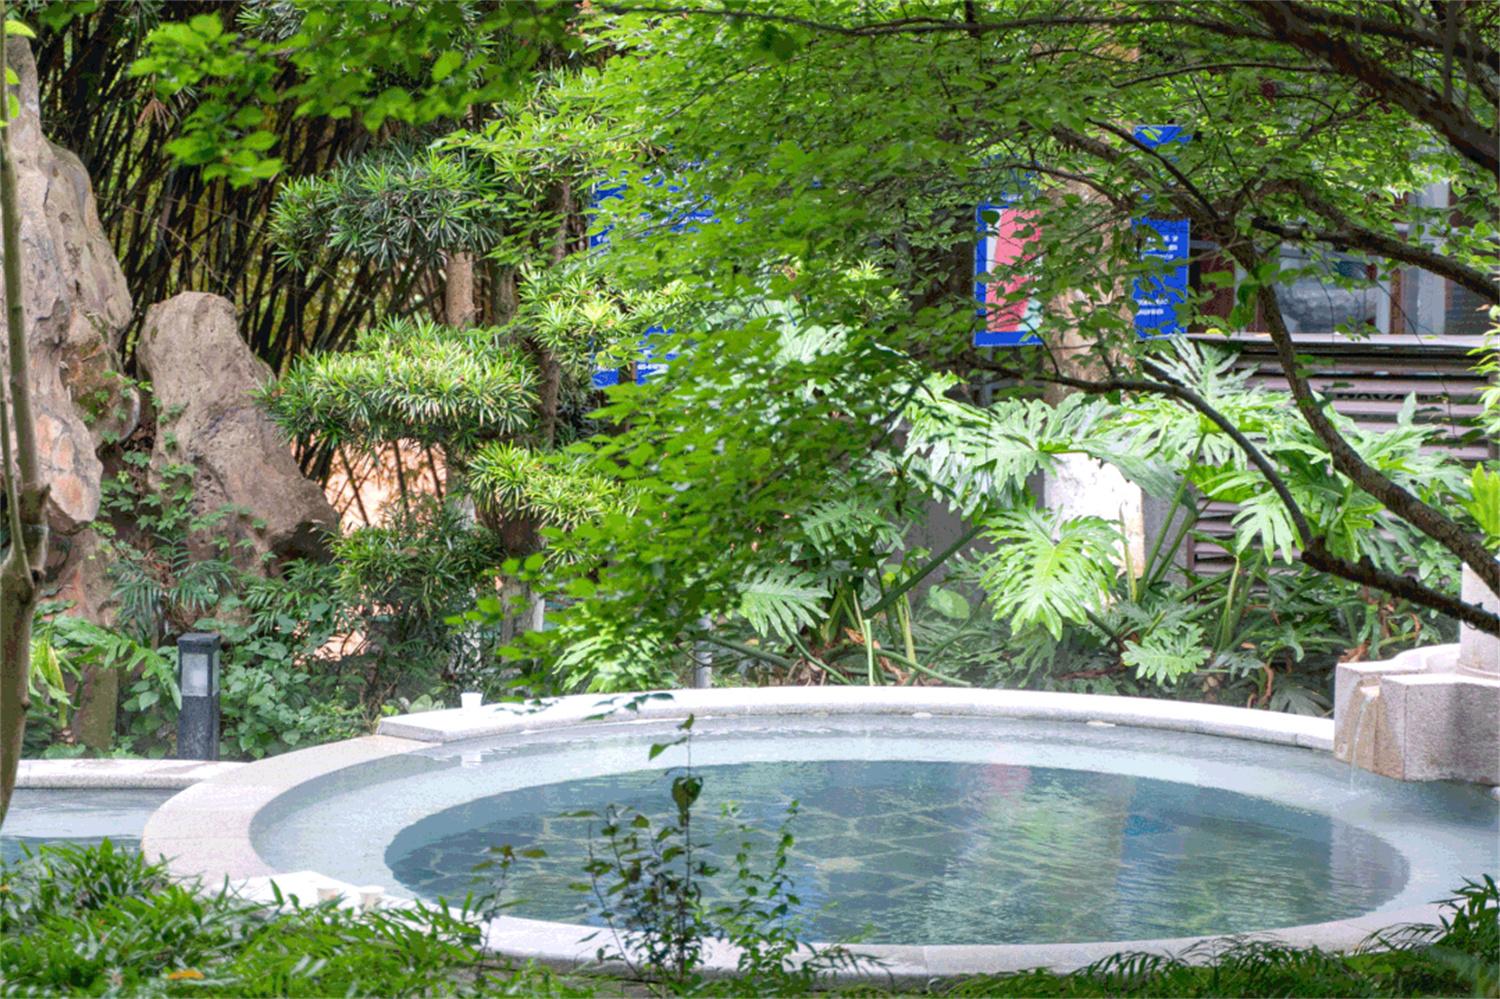 【携程攻略】鄢陵金雨玫瑰温泉度假区景点,认真的讲这里挺新，本来景色温泉都是不错的，本应该是很好的周末旅行…